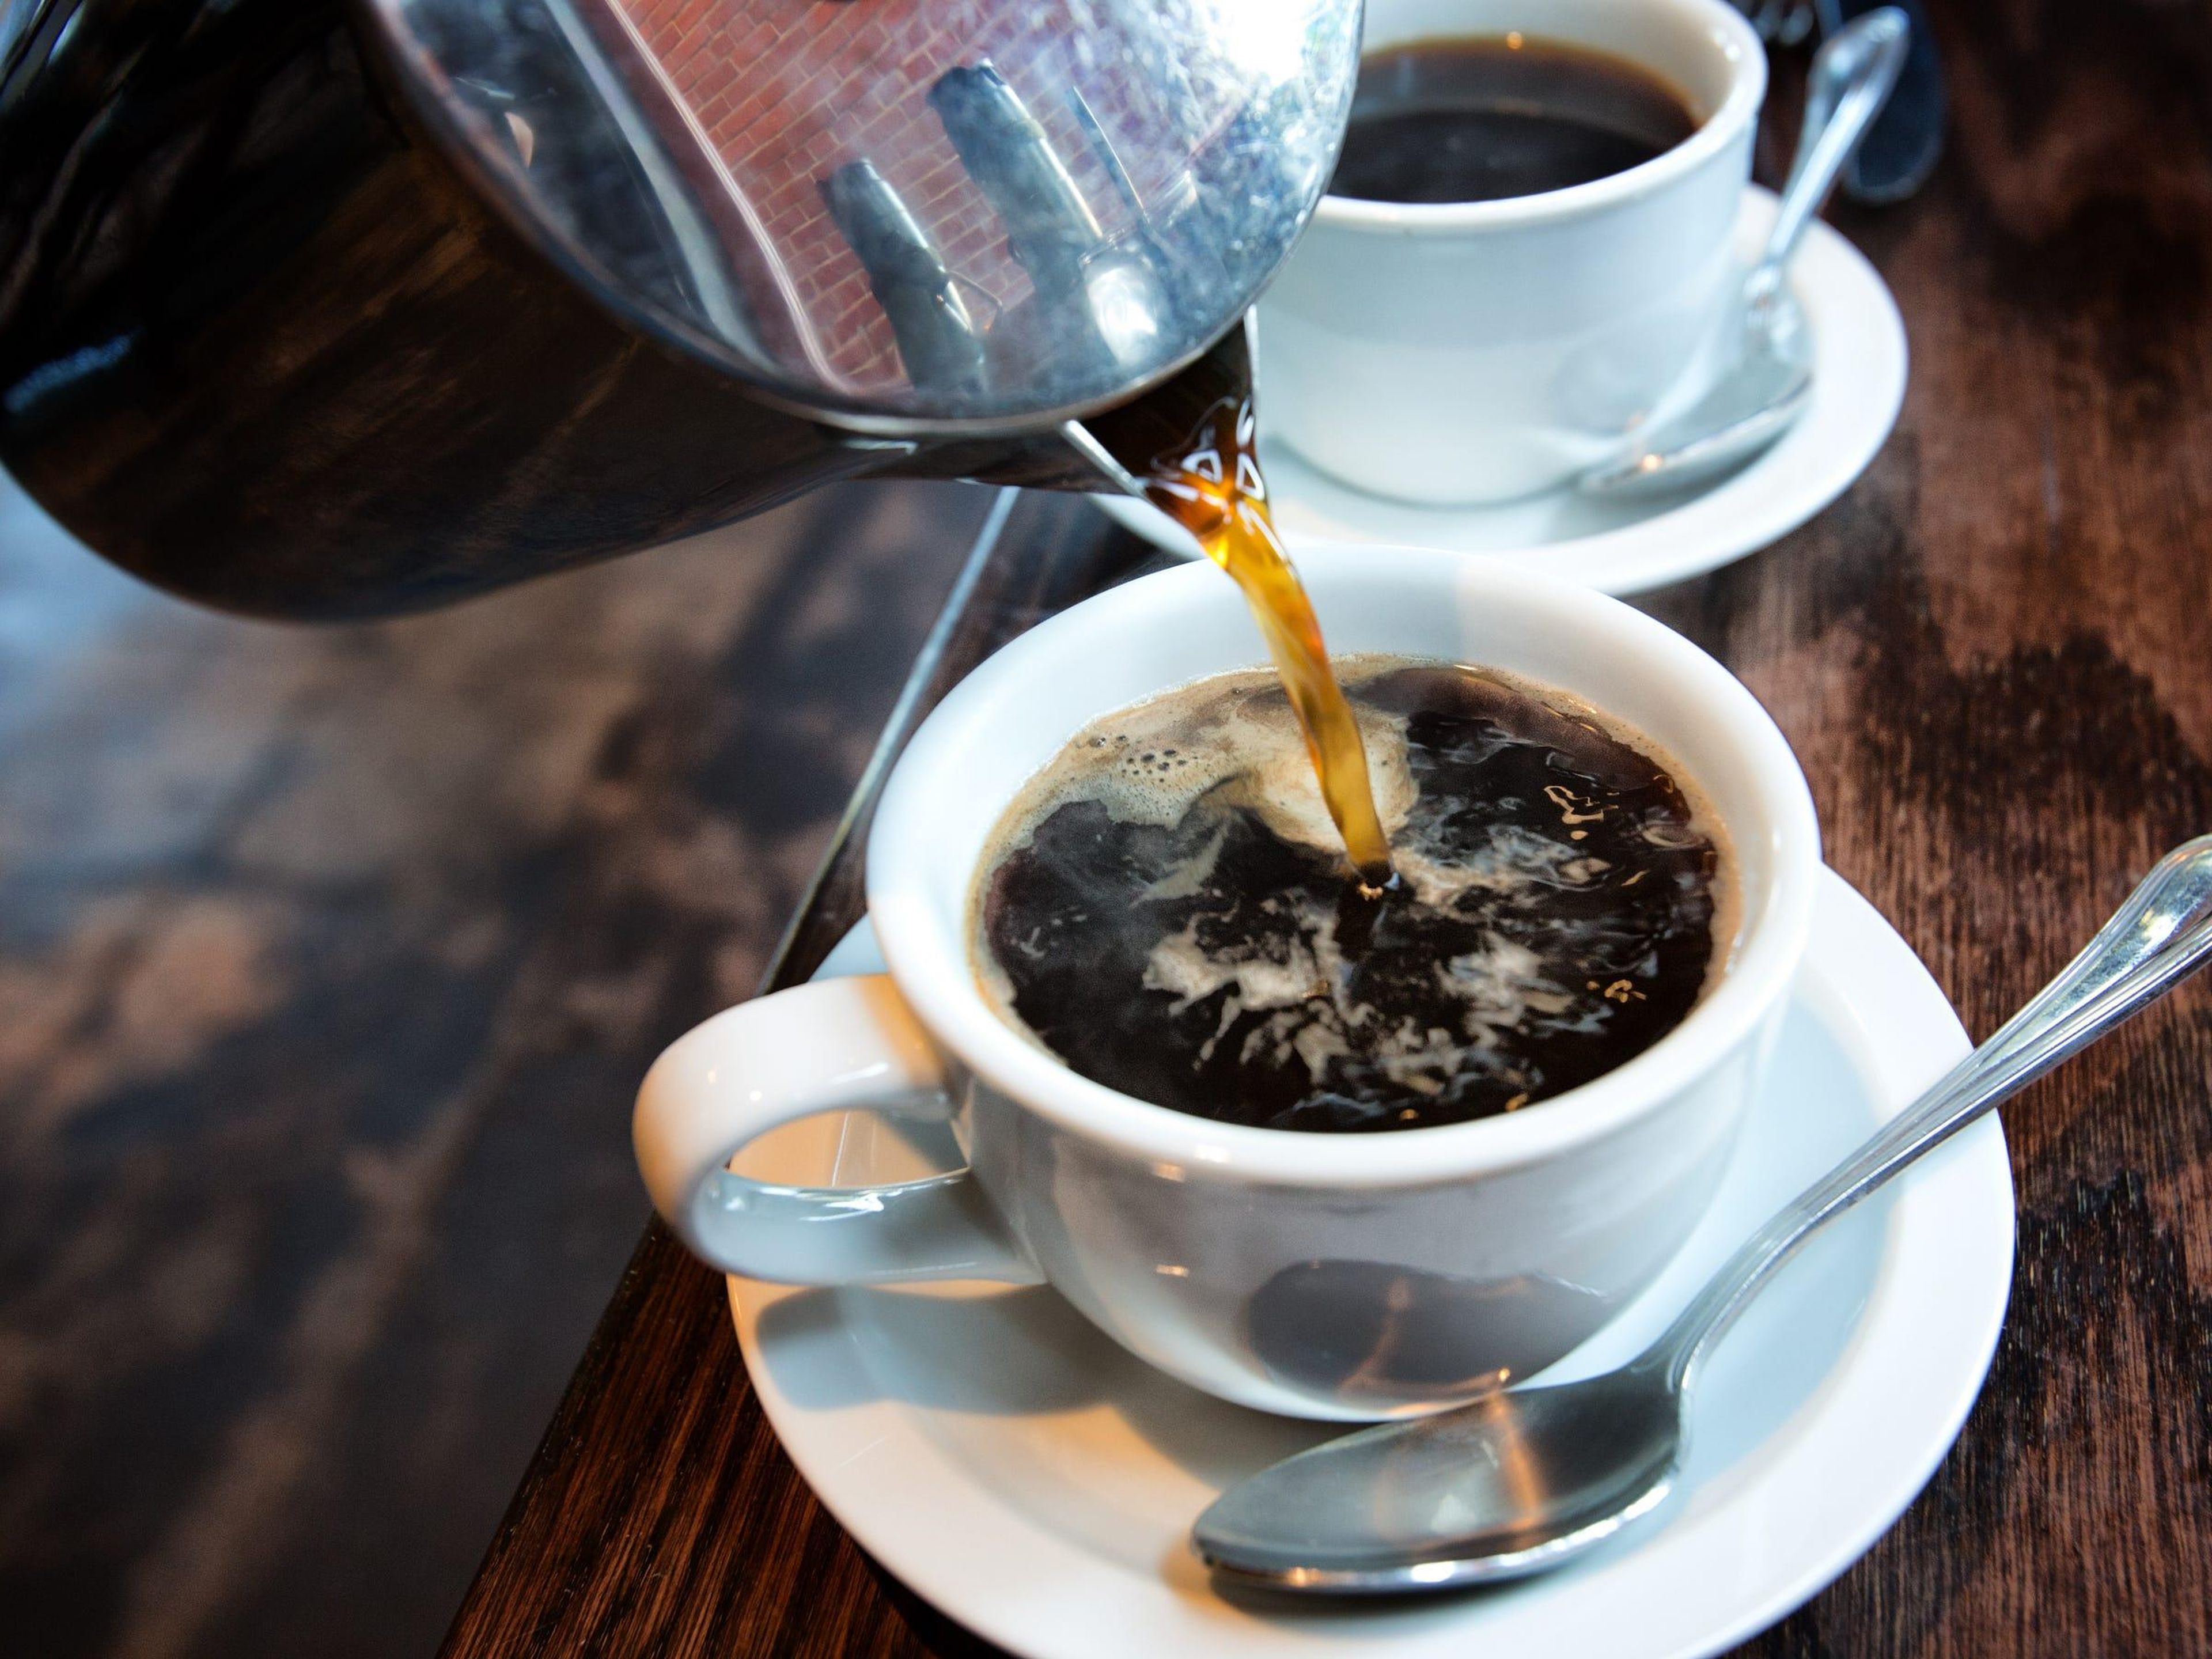 Beber 5 tazas de café al día no tiene ningún peligro a largo plazo y podría reducir el riesgo de enfermedades crónicas